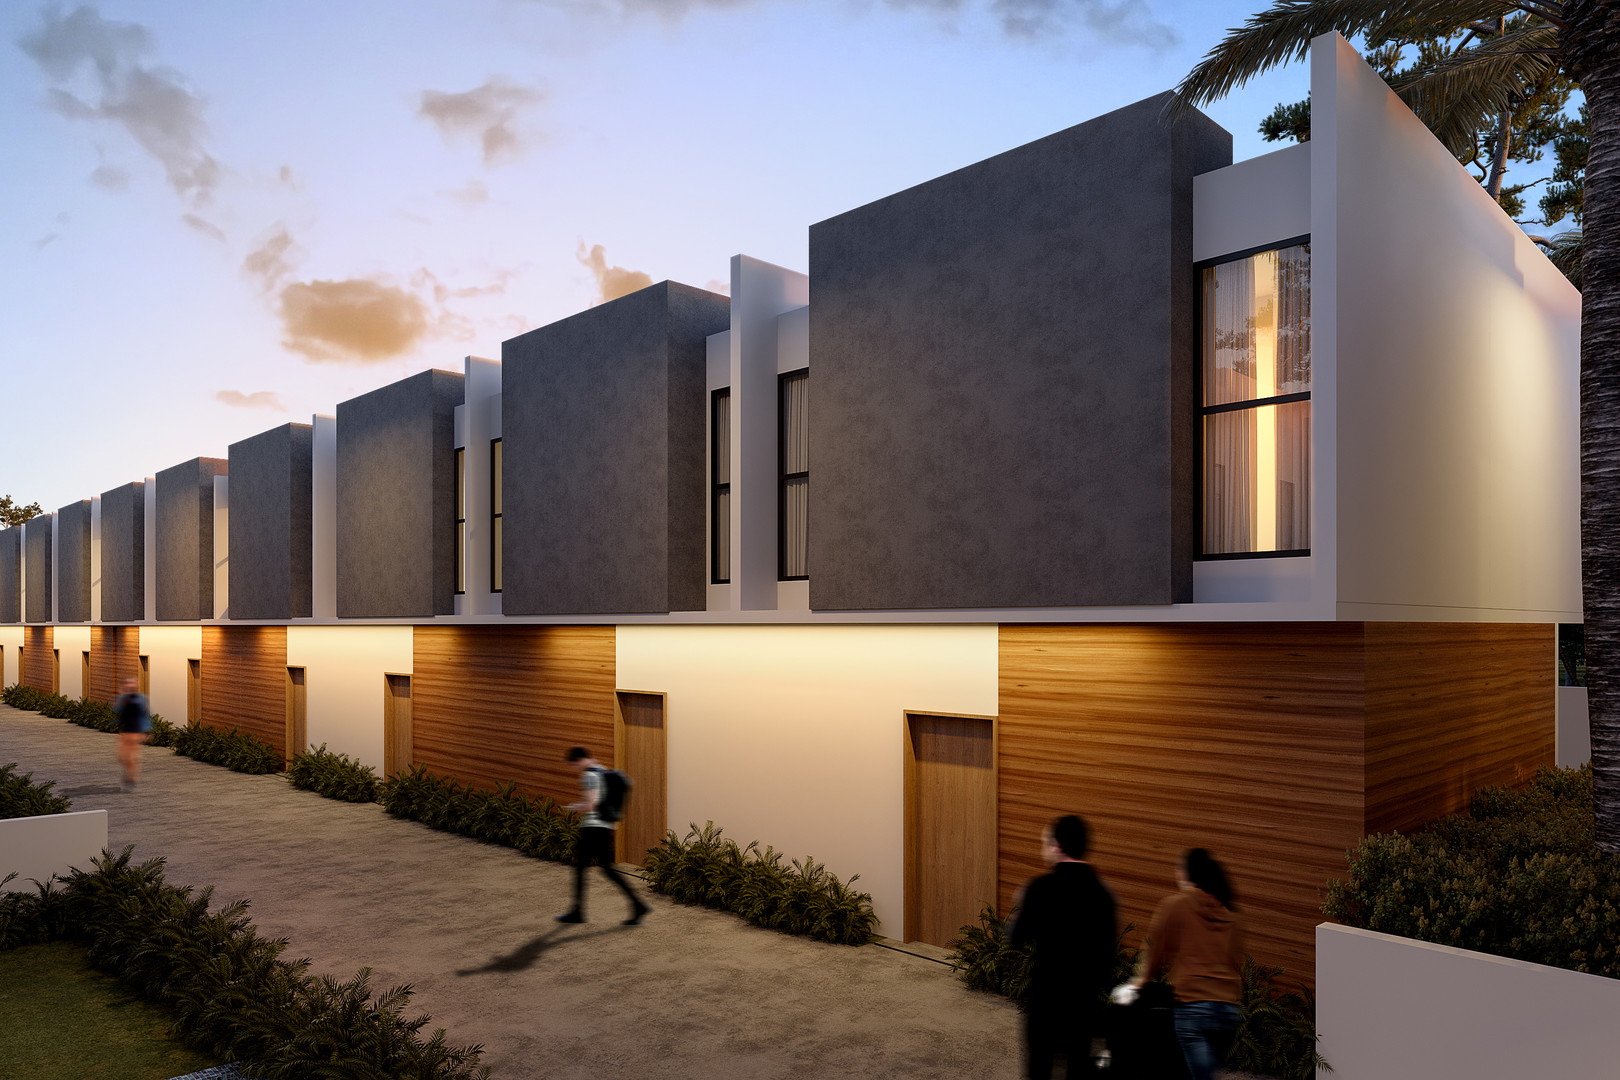 casas - Villas Estilo Duplex Listos 2025 c/Area Social, Pista Caminar, Cigar Lounge  2